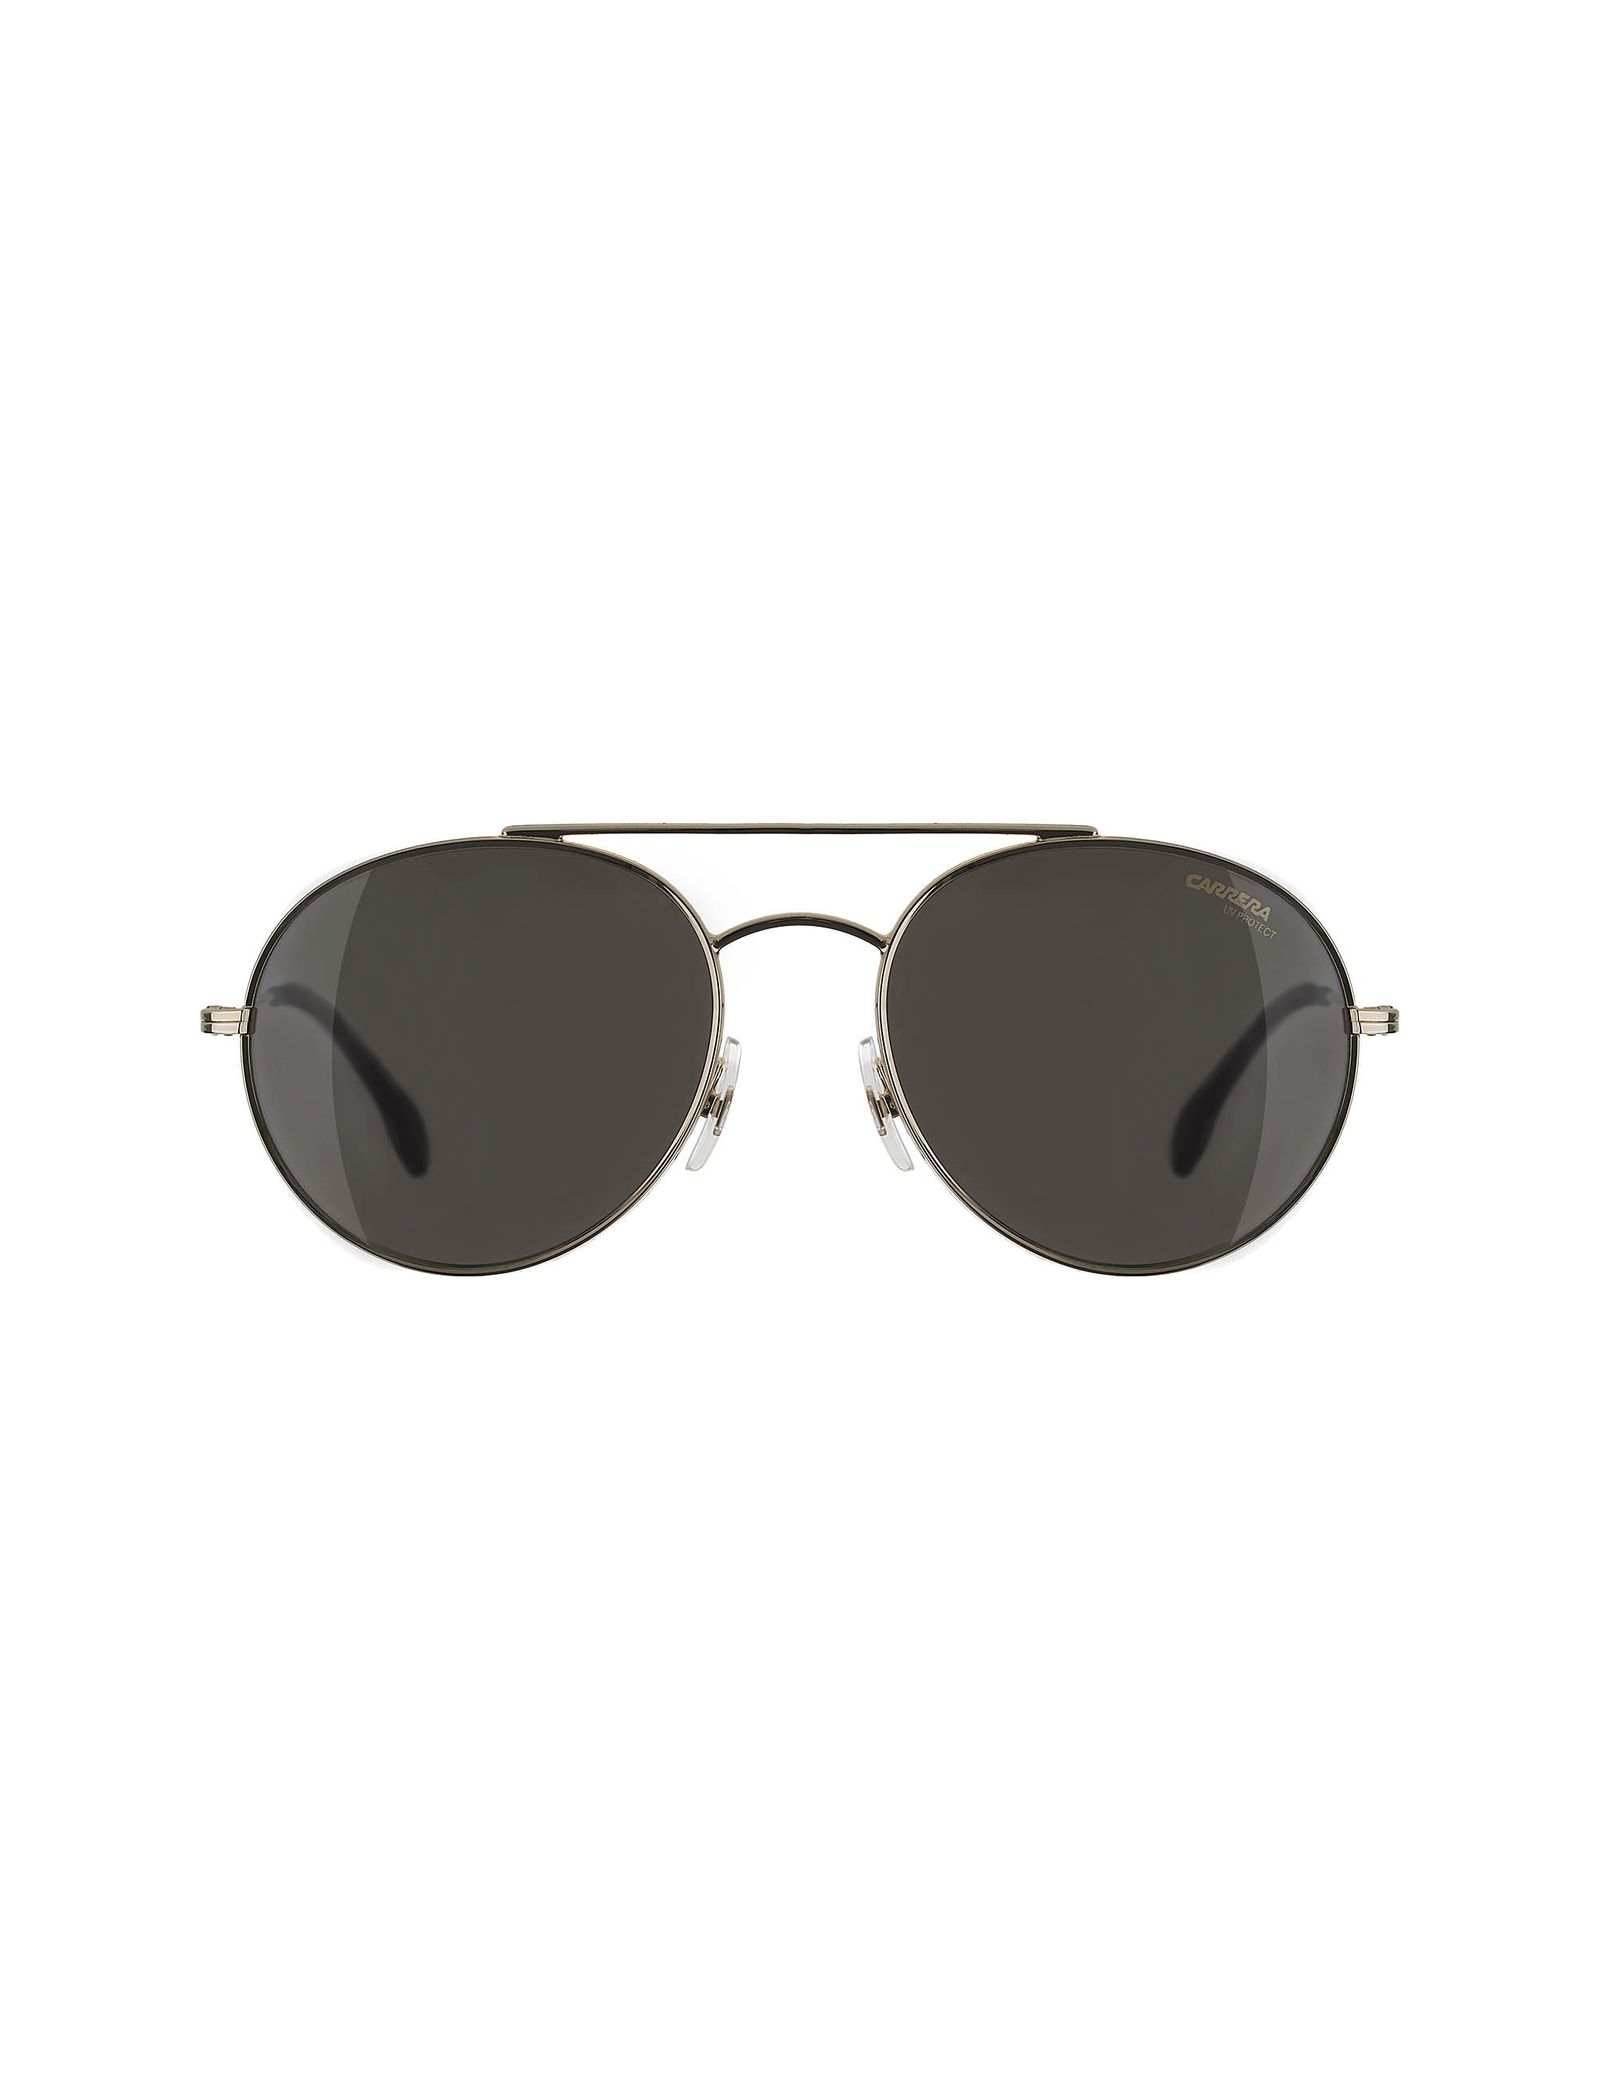 عینک آفتابی خلبانی بزرگسال - کاررا - طلايي - 1